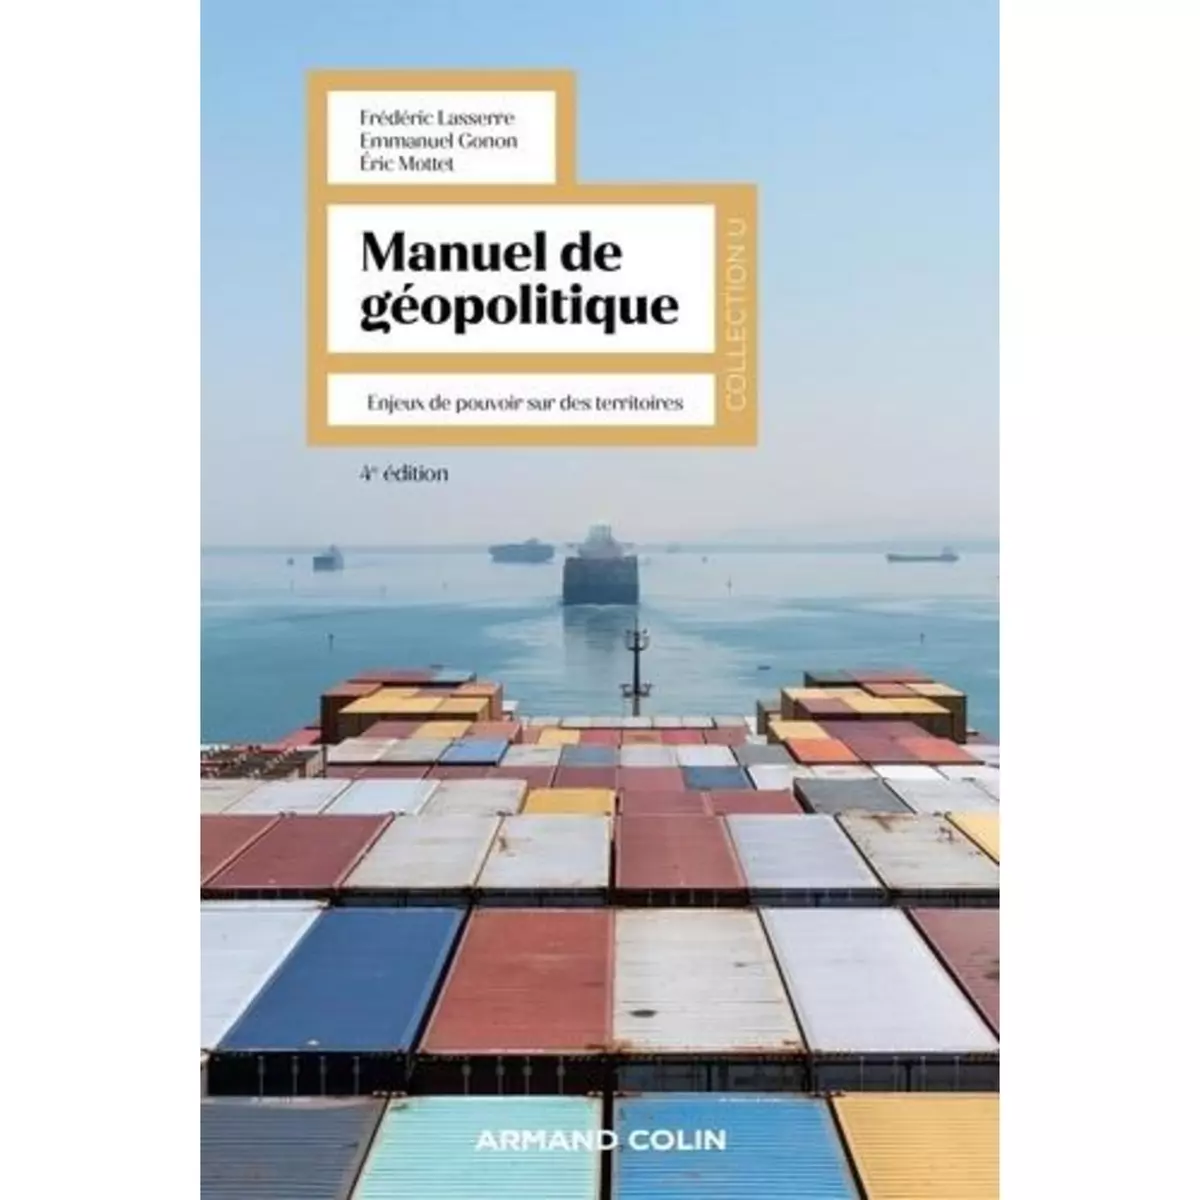  MANUEL DE GEOPOLITIQUE. ENJEUX DE POUVOIR SUR DES TERRITOIRES, 4E EDITION, Lasserre Frédéric